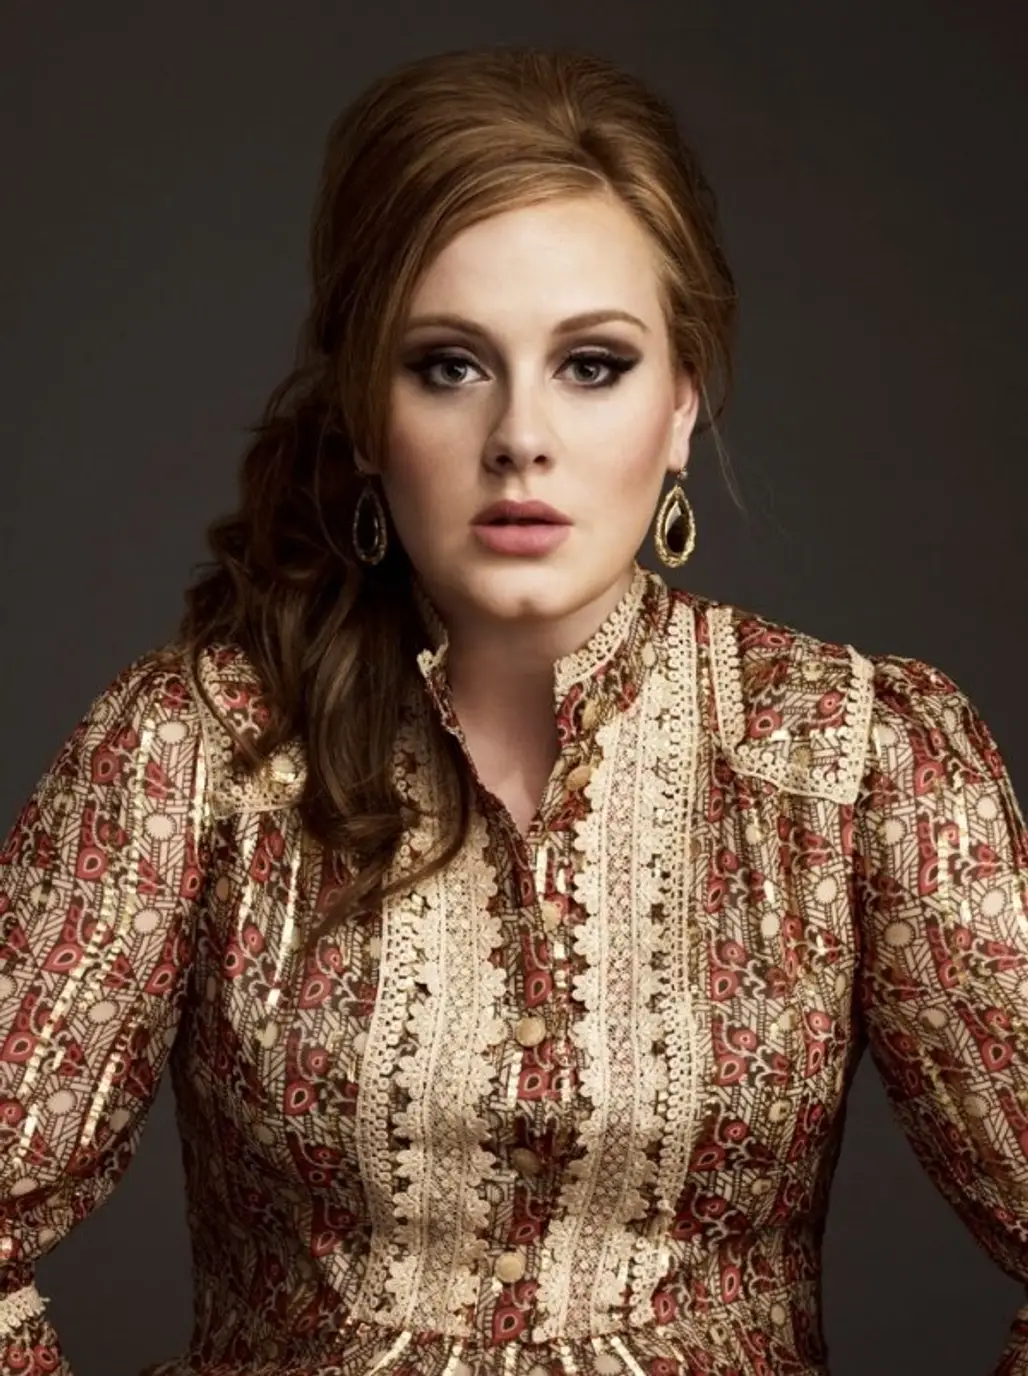 TBA – Adele